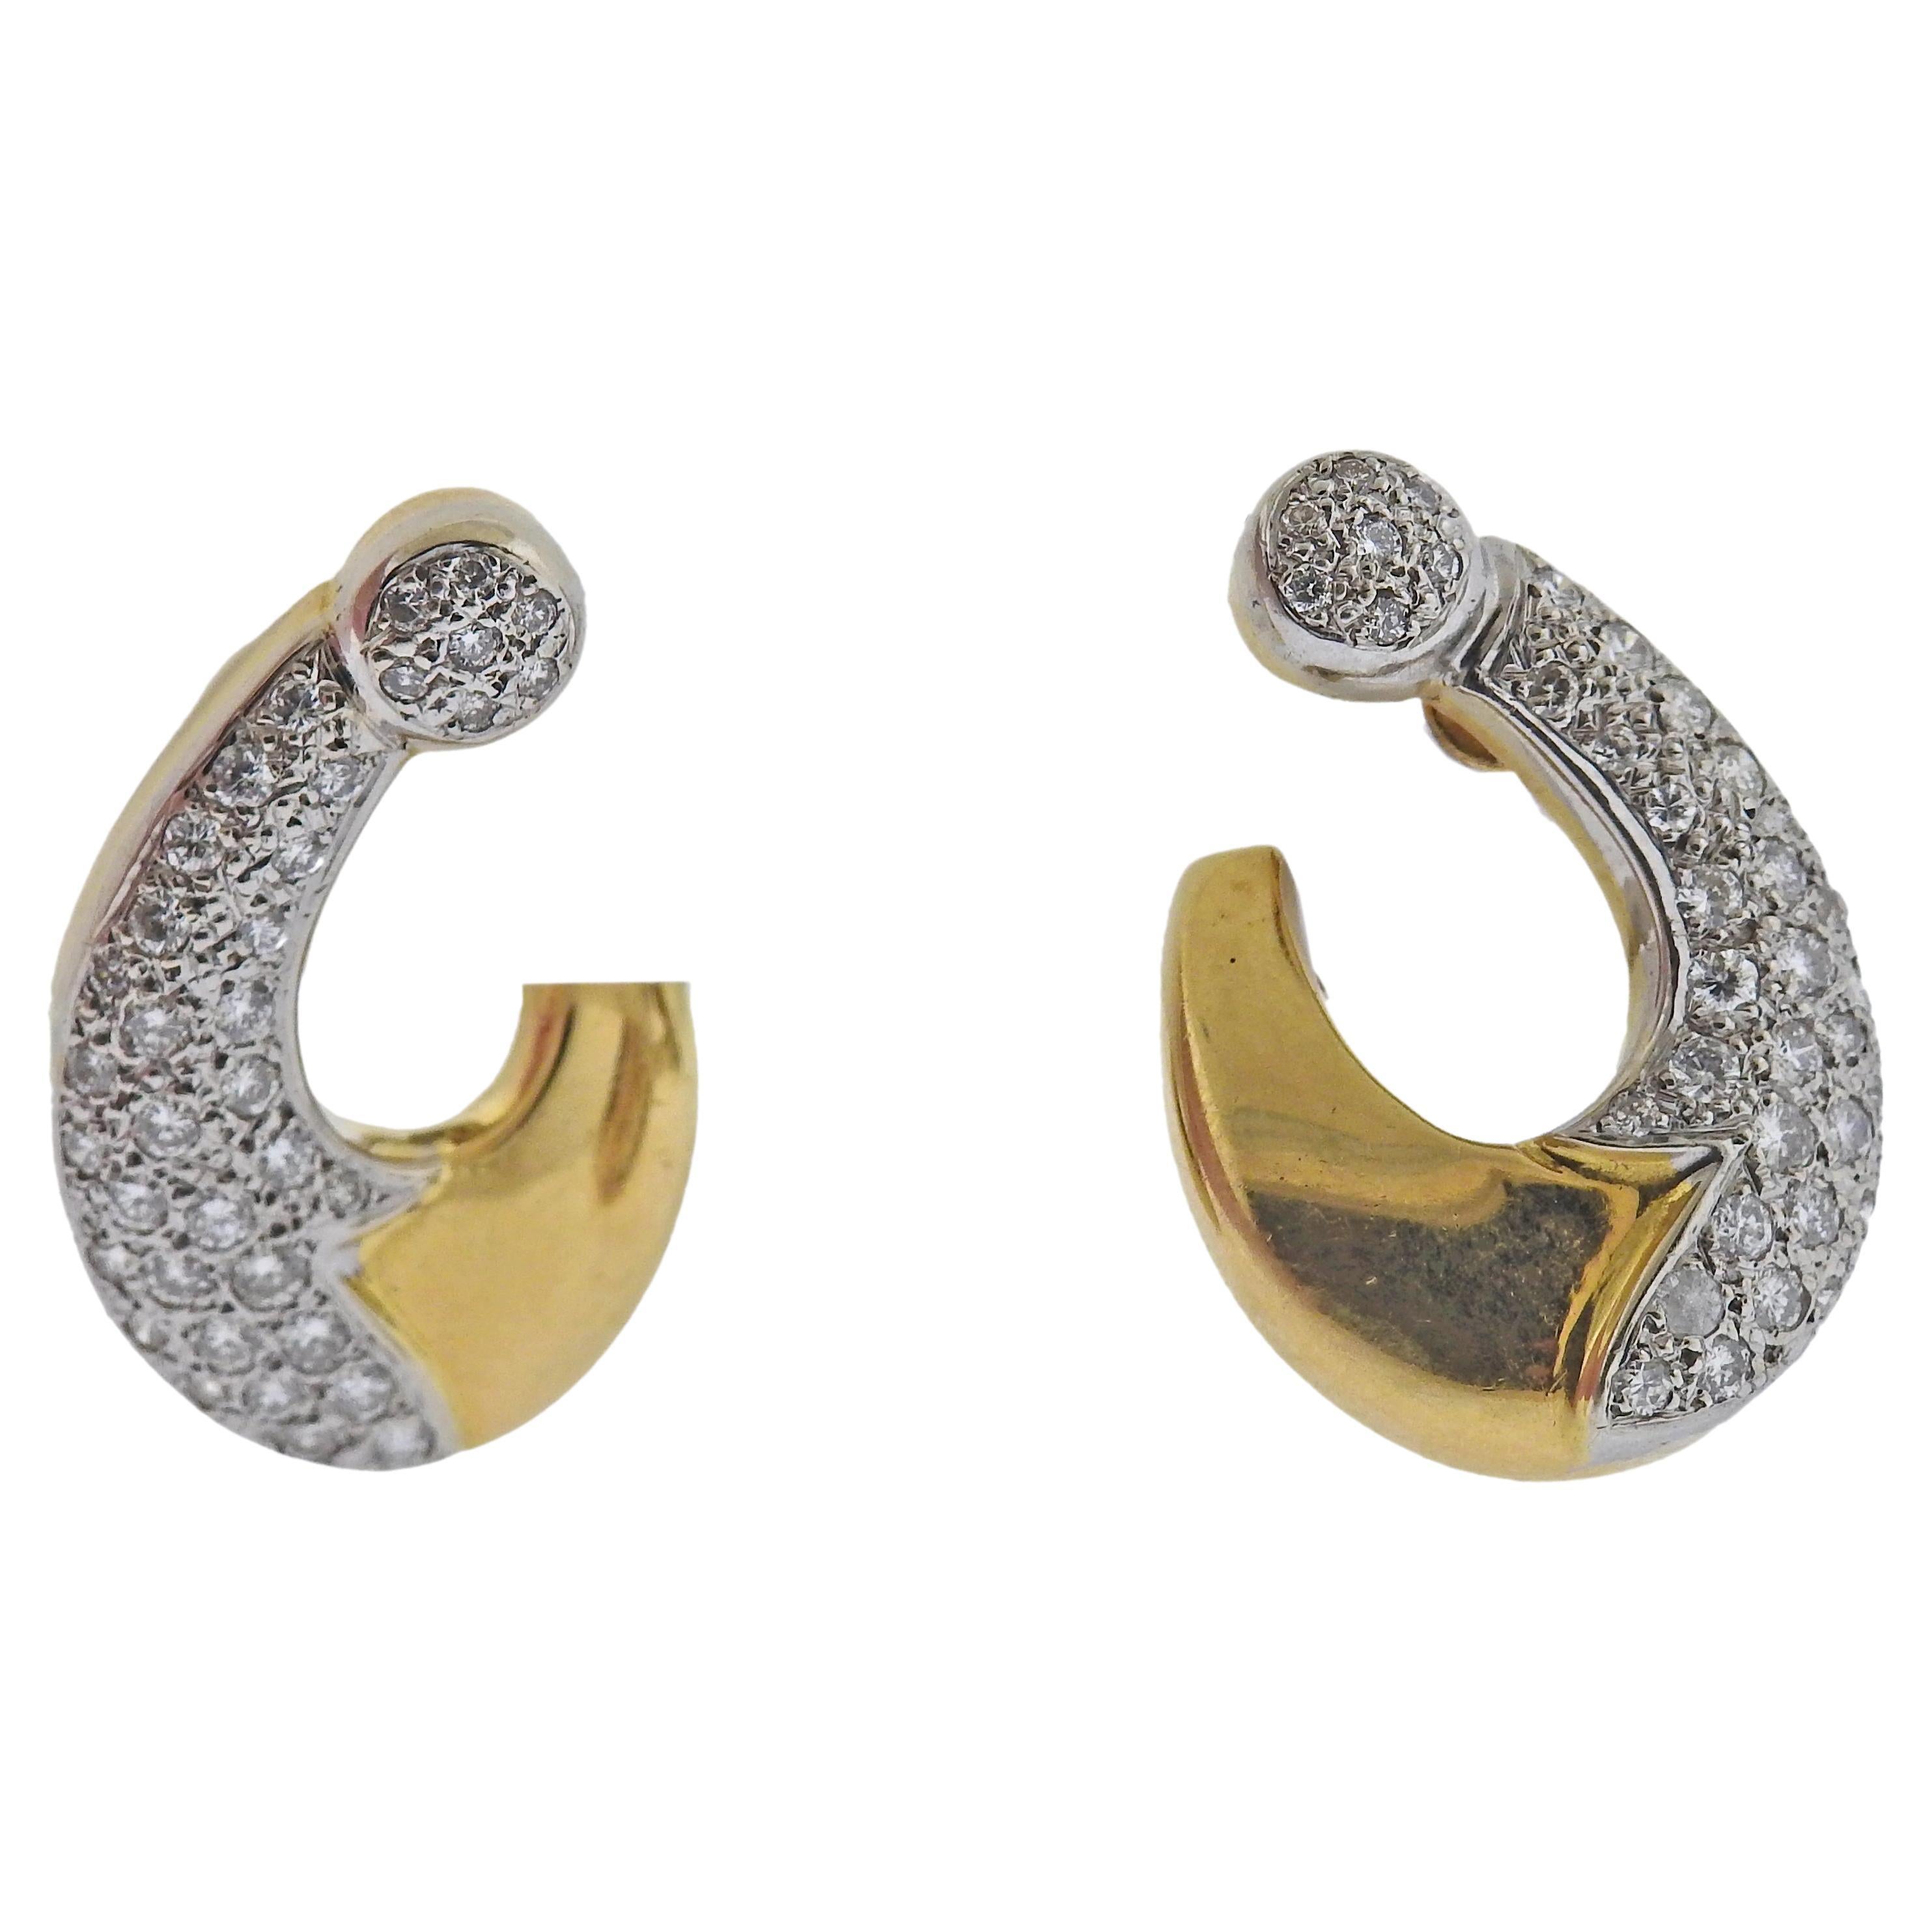 18k Gold Diamond Cocktail Earrings